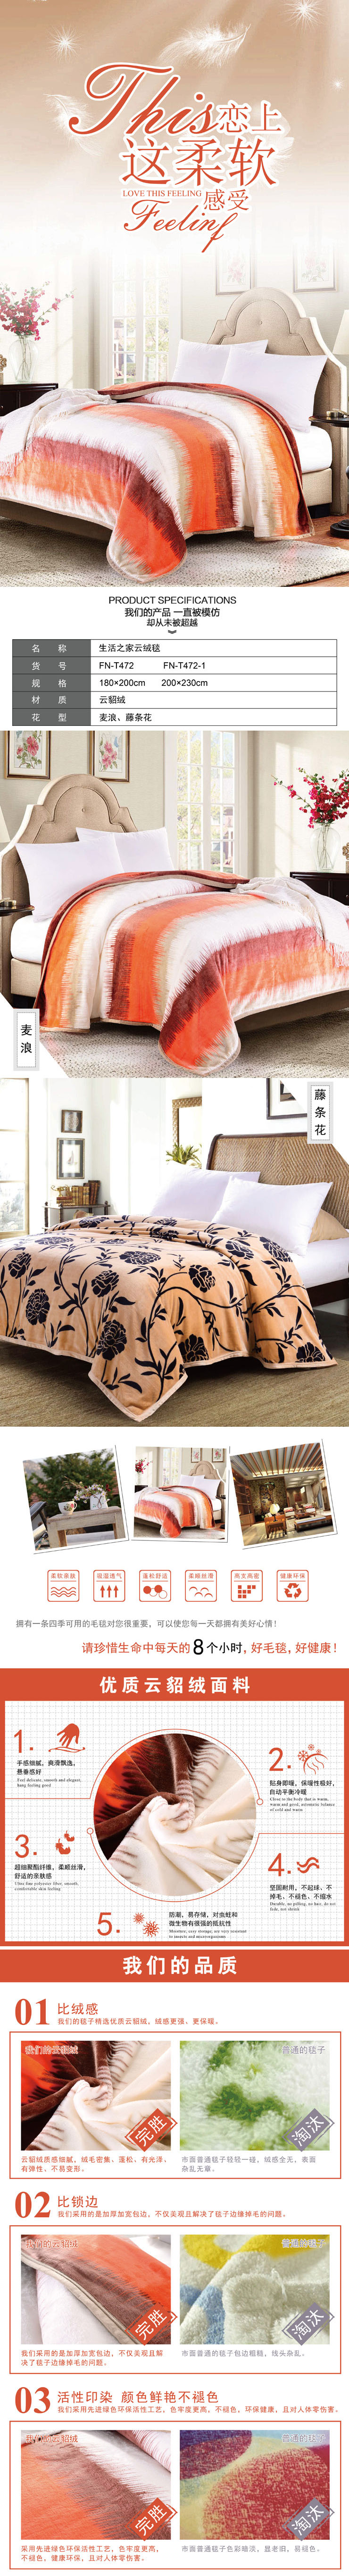 床上毛毯,毛绒毯子,江苏毛毯生产厂家,员工福利礼品